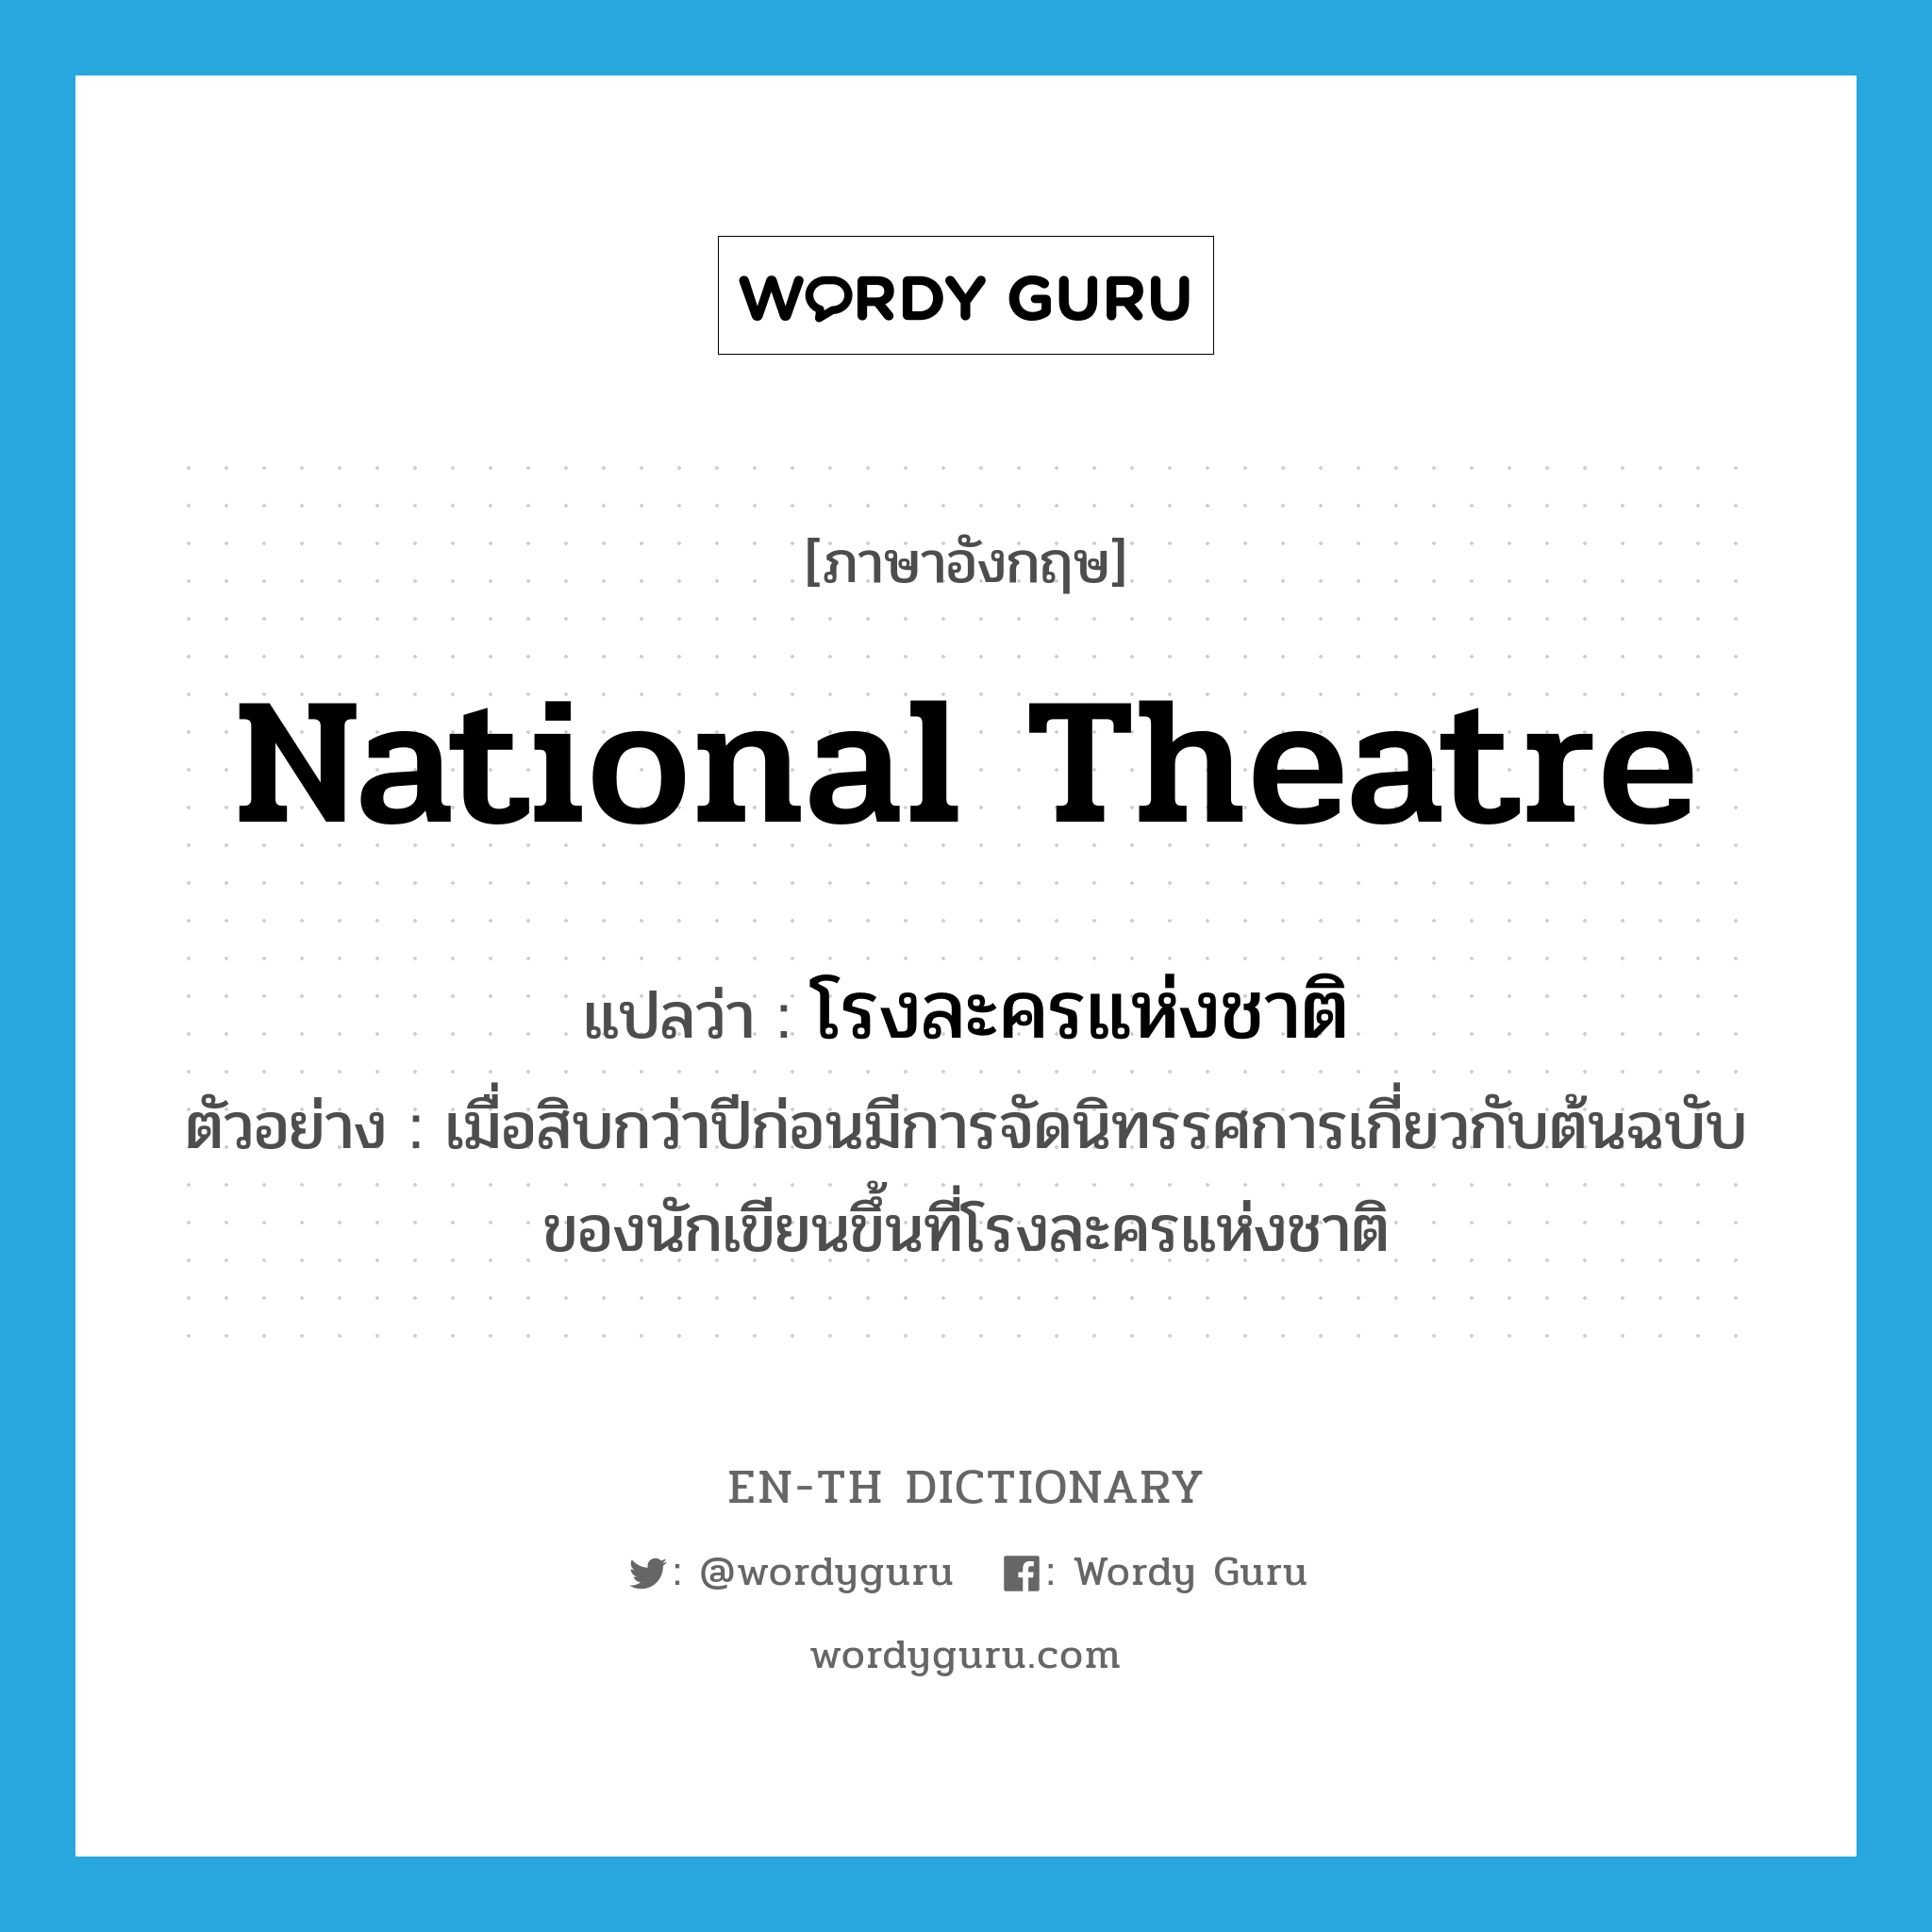 national theatre แปลว่า?, คำศัพท์ภาษาอังกฤษ national theatre แปลว่า โรงละครแห่งชาติ ประเภท N ตัวอย่าง เมื่อสิบกว่าปีก่อนมีการจัดนิทรรศการเกี่ยวกับต้นฉบับของนักเขียนขึ้นที่โรงละครแห่งชาติ หมวด N